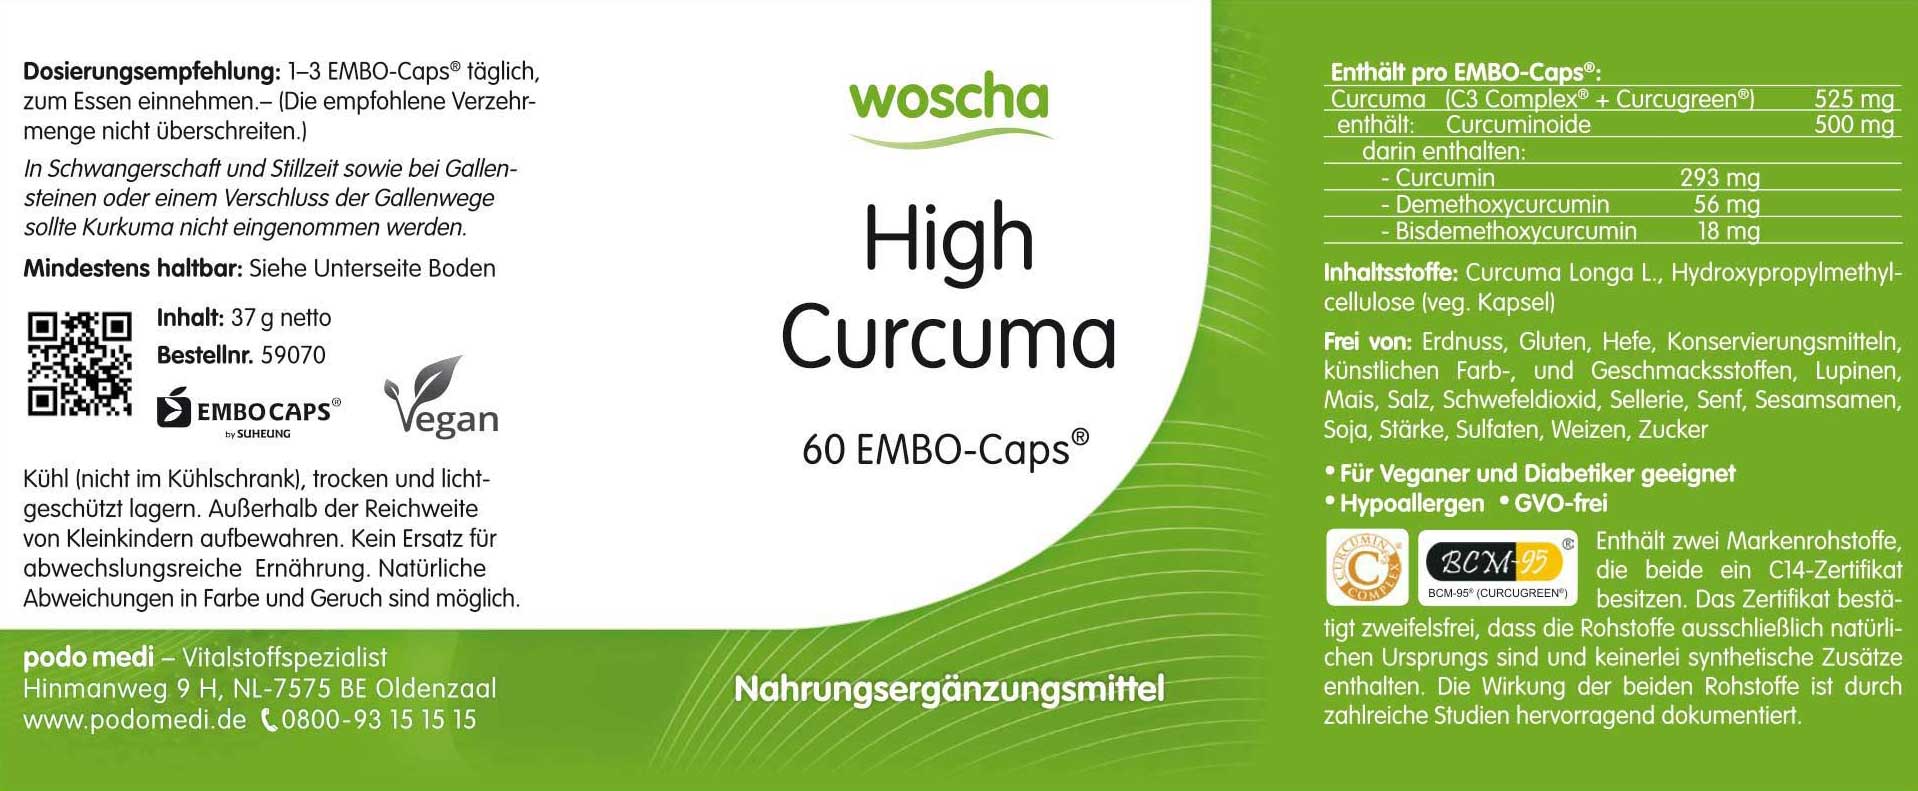 Woscha High Curcuma von podo medi beinhaltet 60 Kapseln Etikett